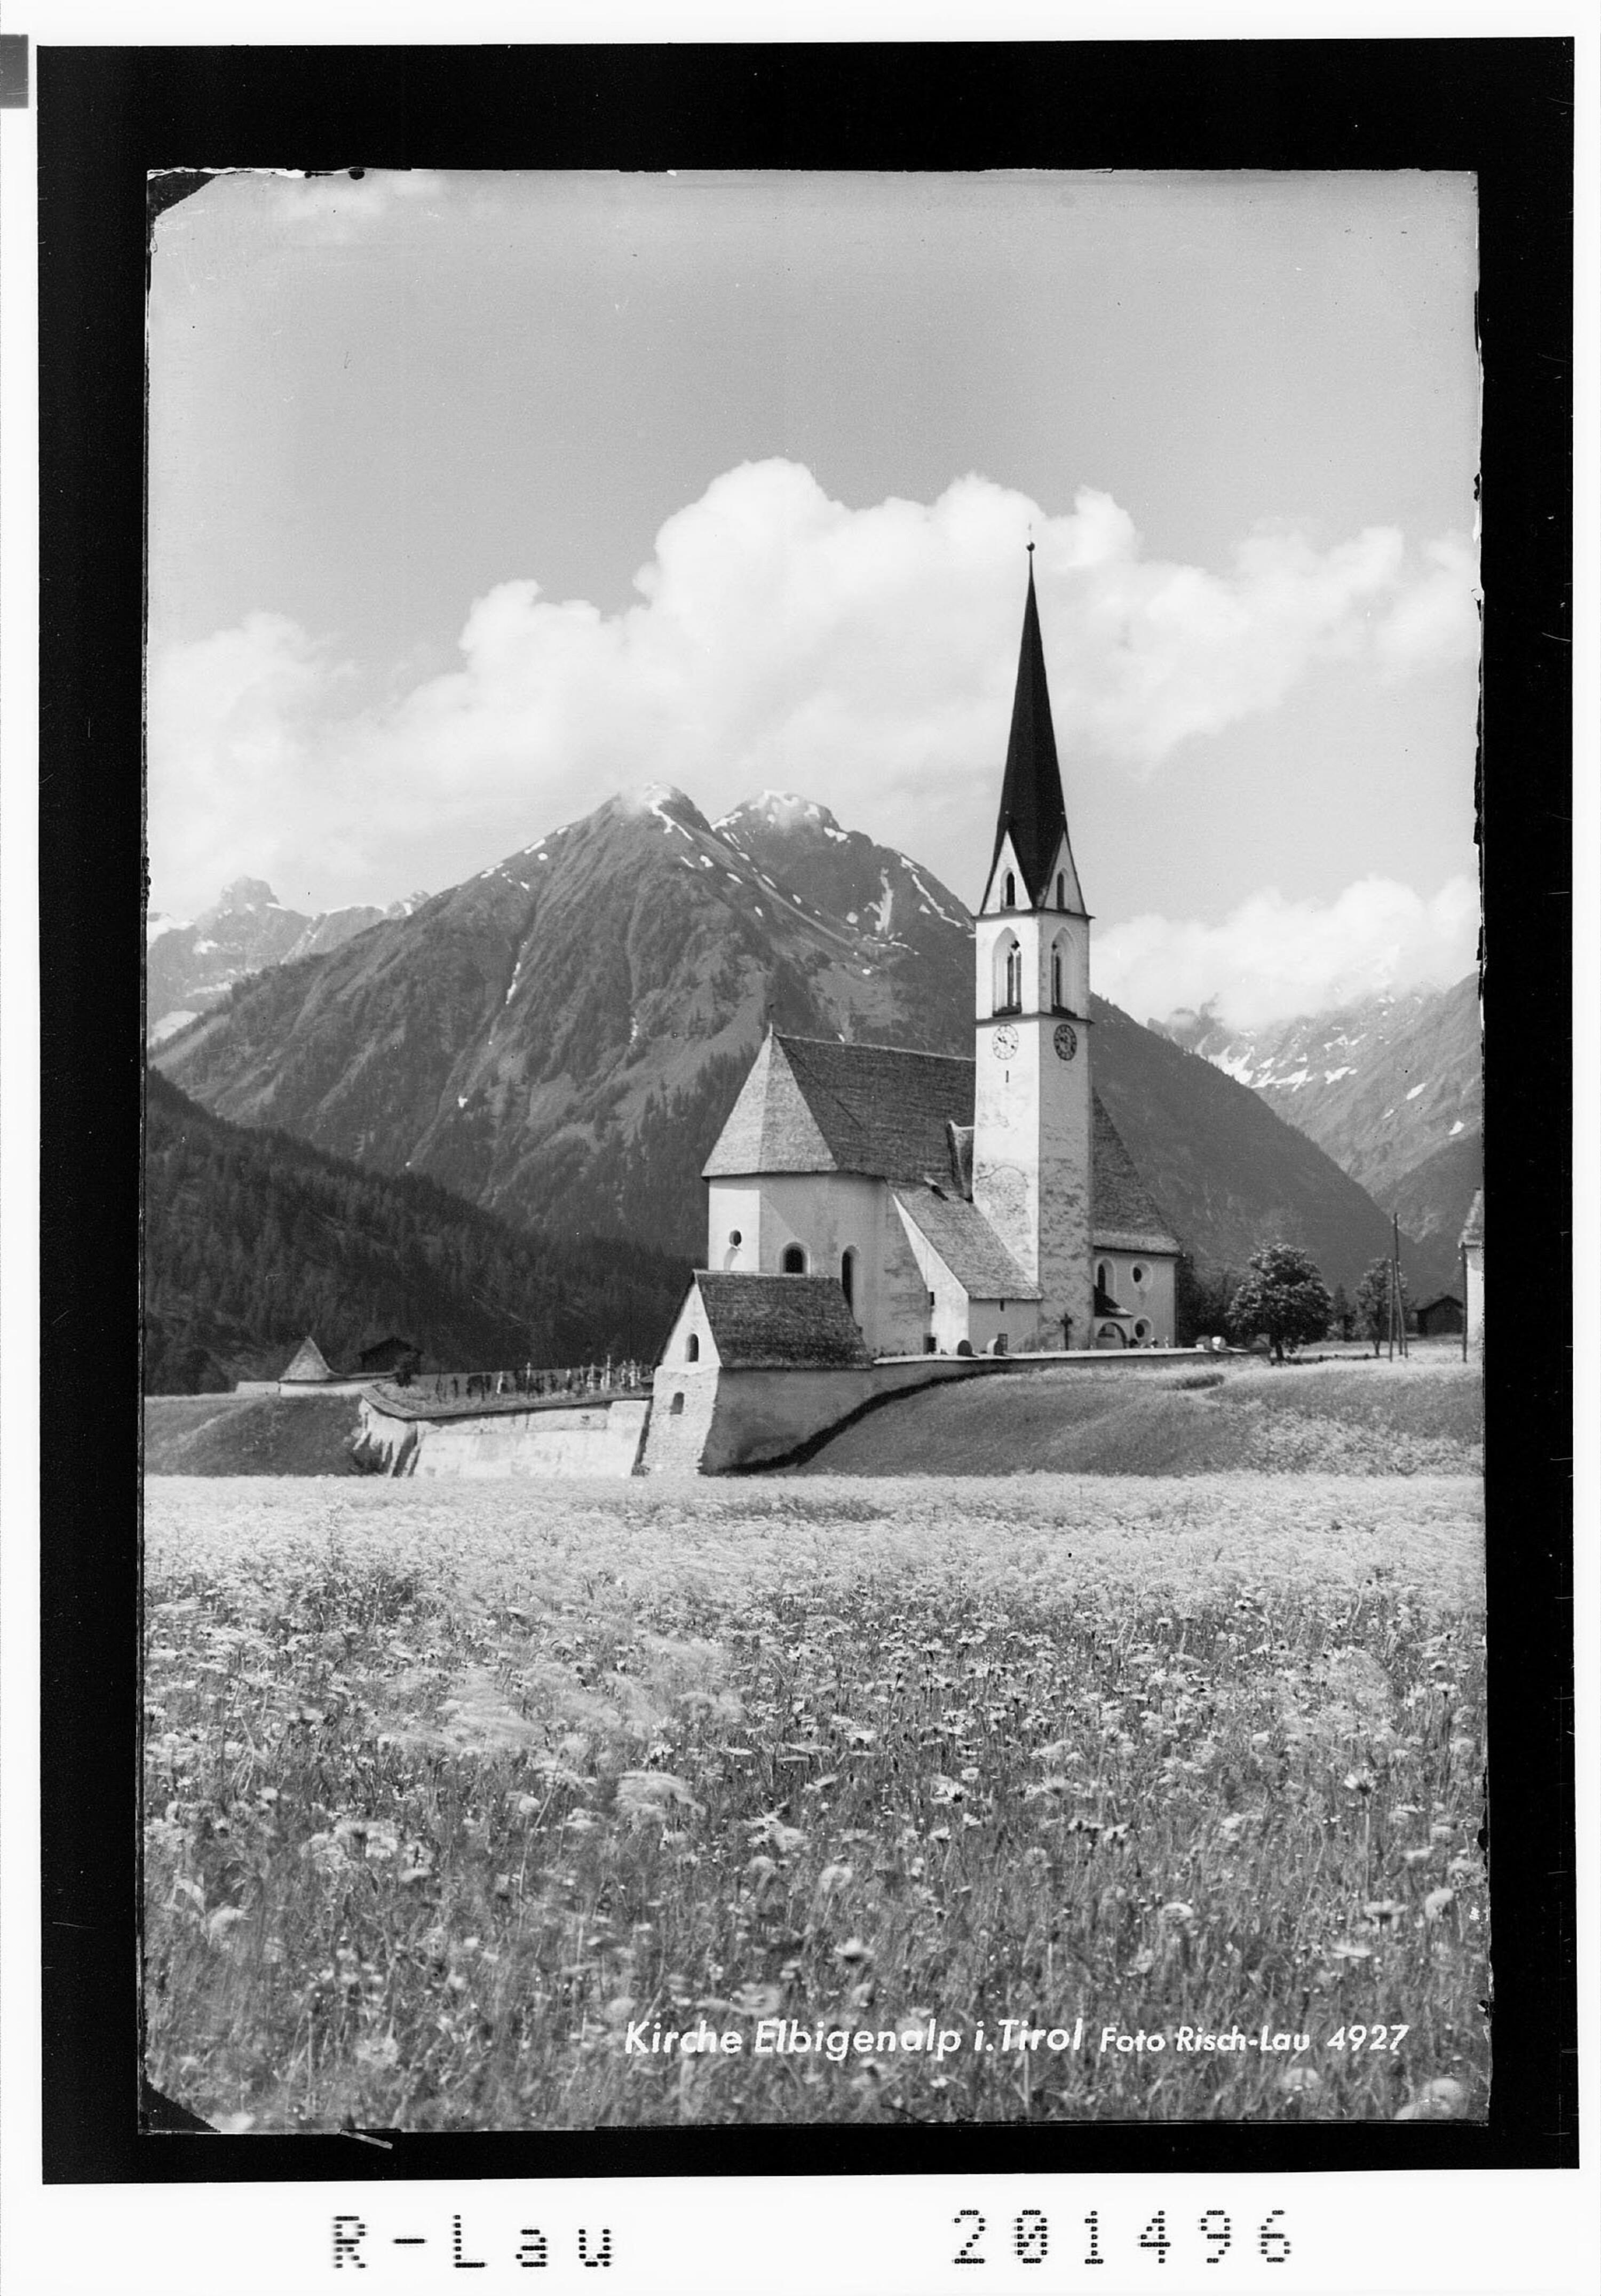 Kirche Elbigenalp in Tirol></div>


    <hr>
    <div class=